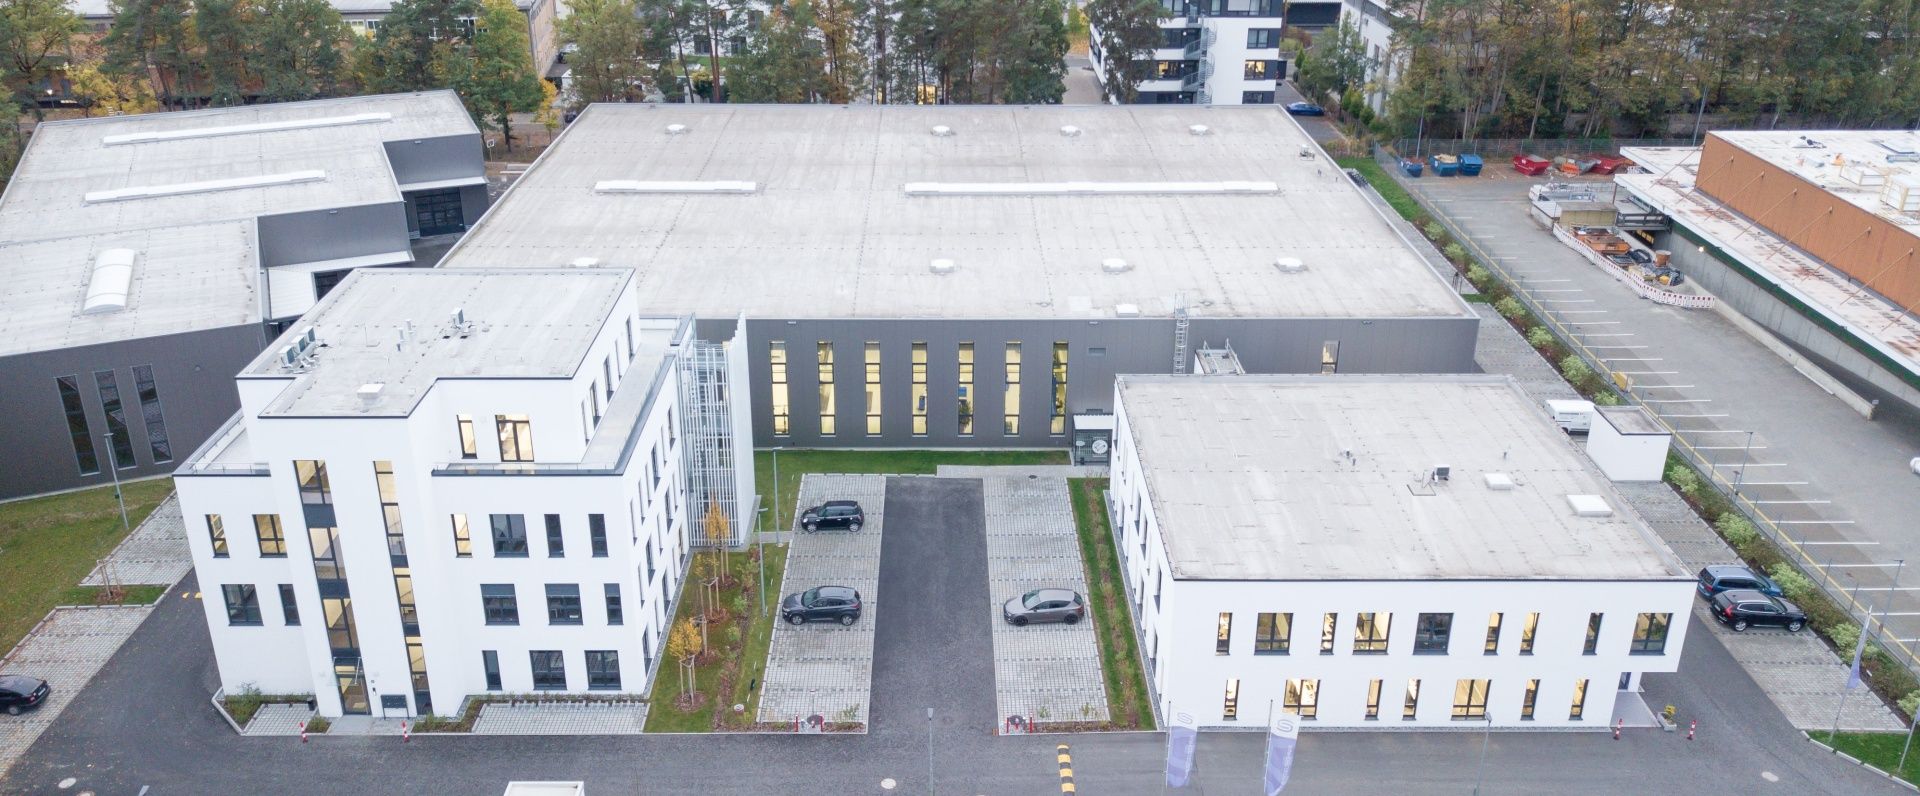 S+S Regeltechnik Eingang Firmengebäude und Geländeübersicht